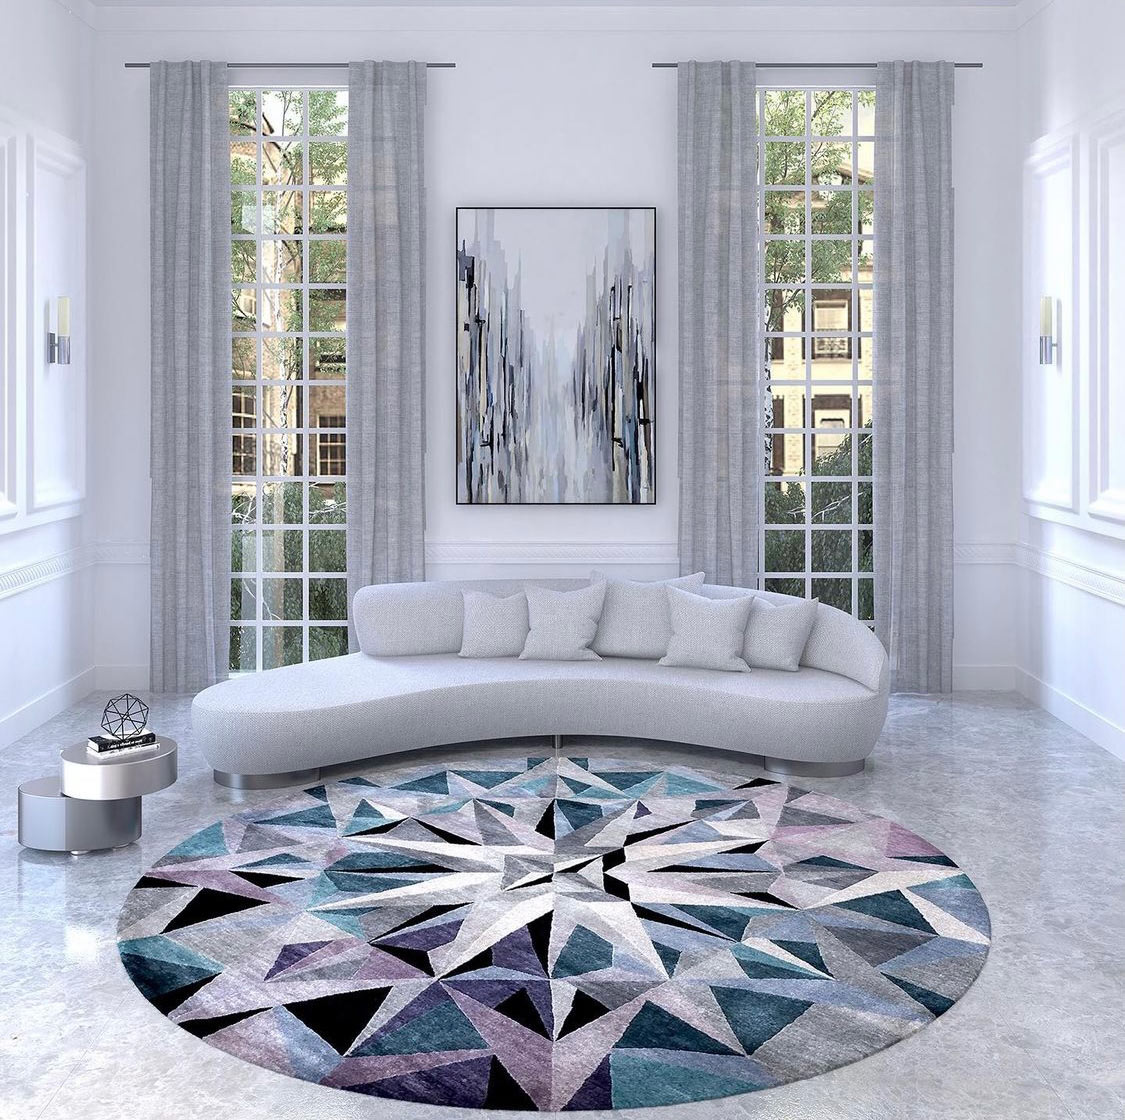 Home interior w/ Matrix rug